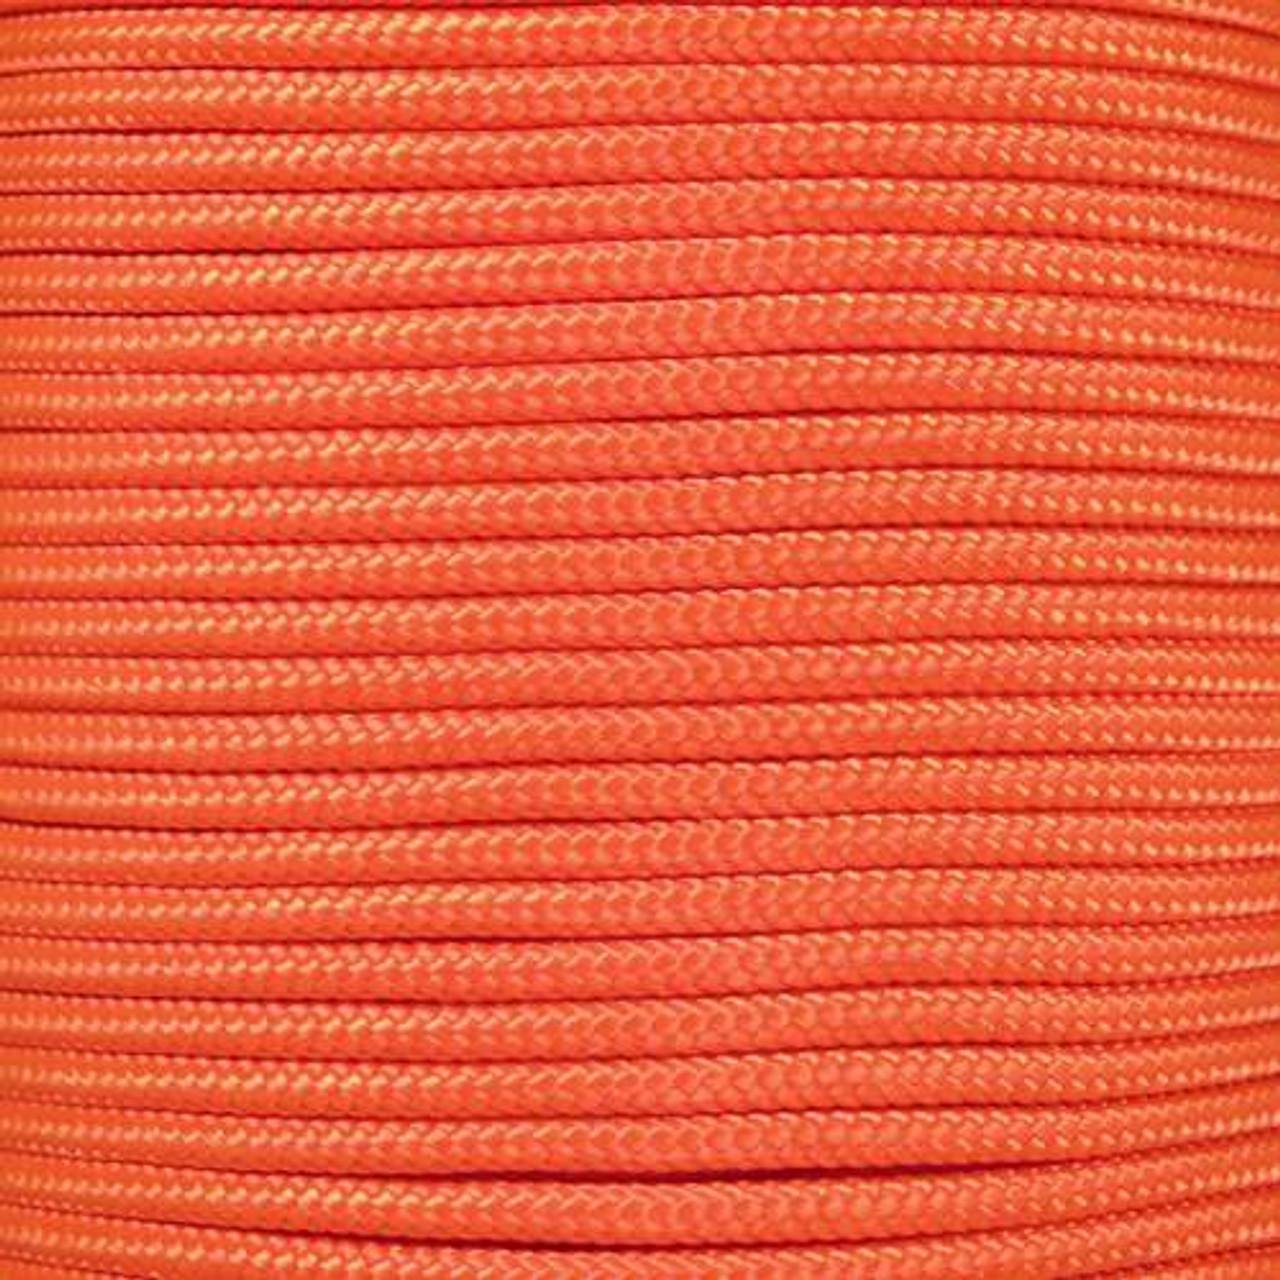 Neon Orange - 325 Paracord